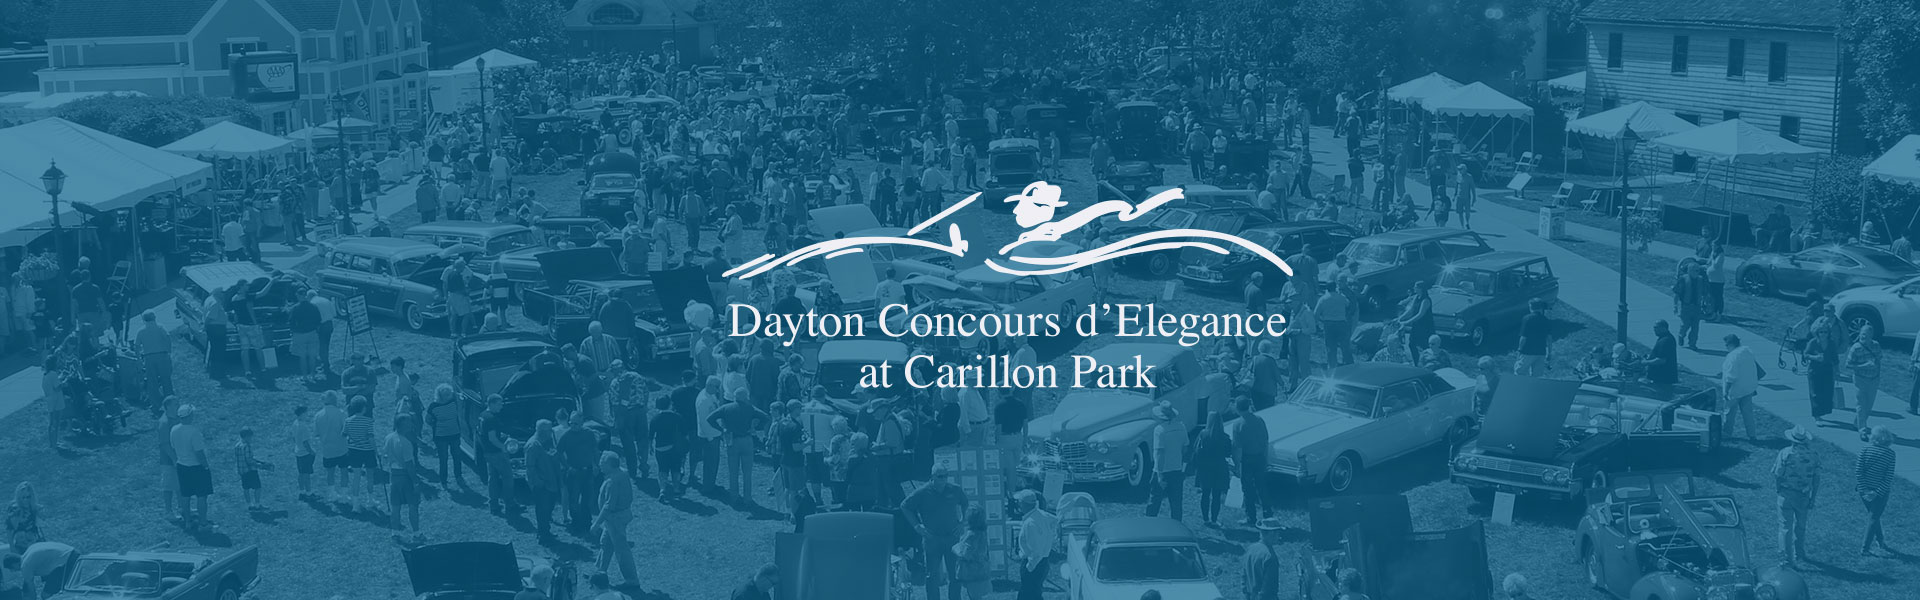 Dayton Concours d'Elegance